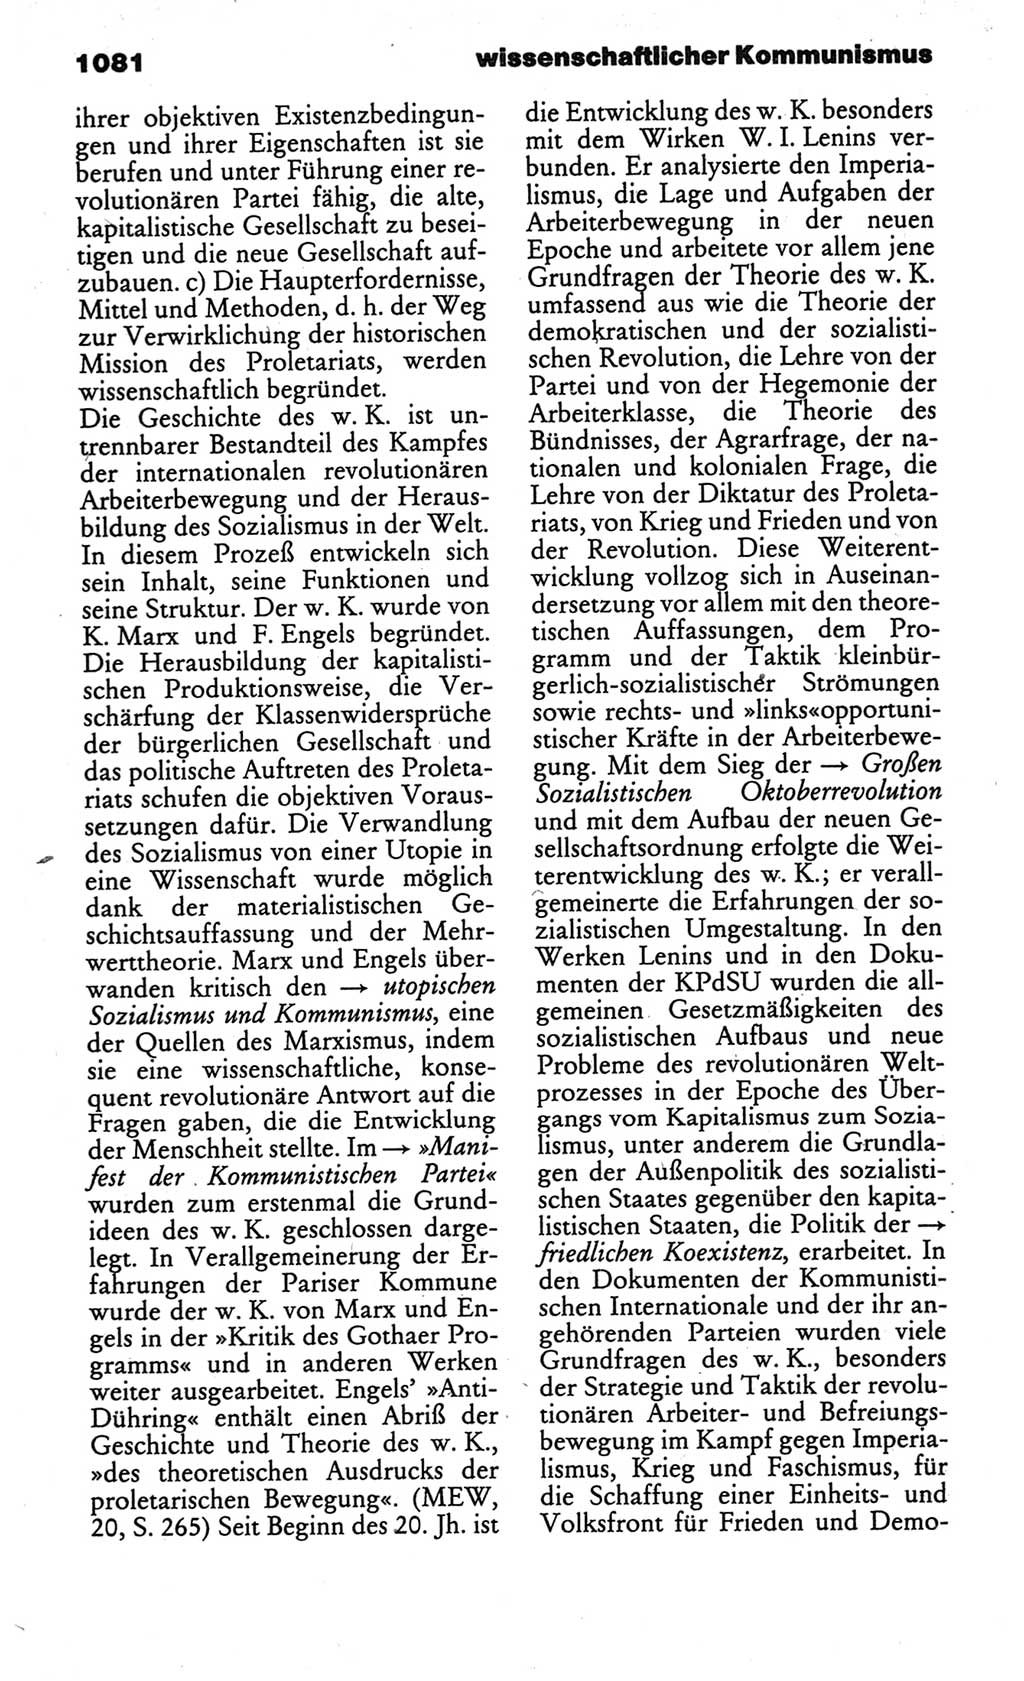 Kleines politisches Wörterbuch [Deutsche Demokratische Republik (DDR)] 1986, Seite 1081 (Kl. pol. Wb. DDR 1986, S. 1081)